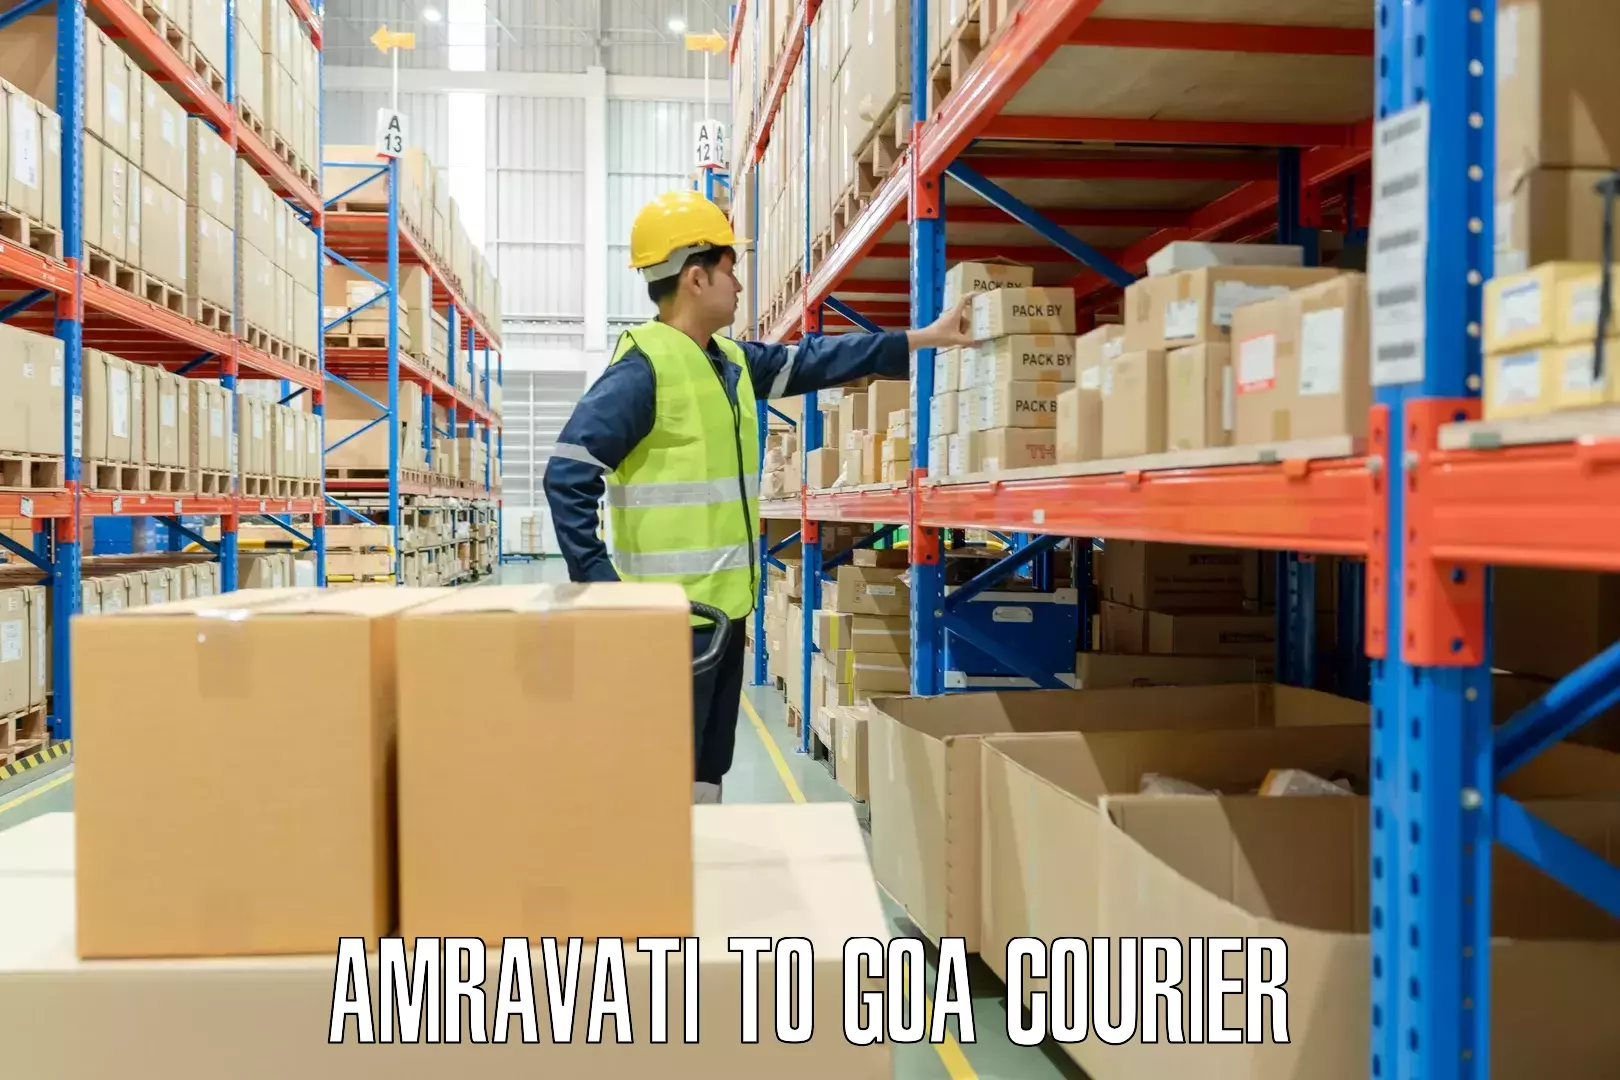 Regional luggage transport Amravati to Goa